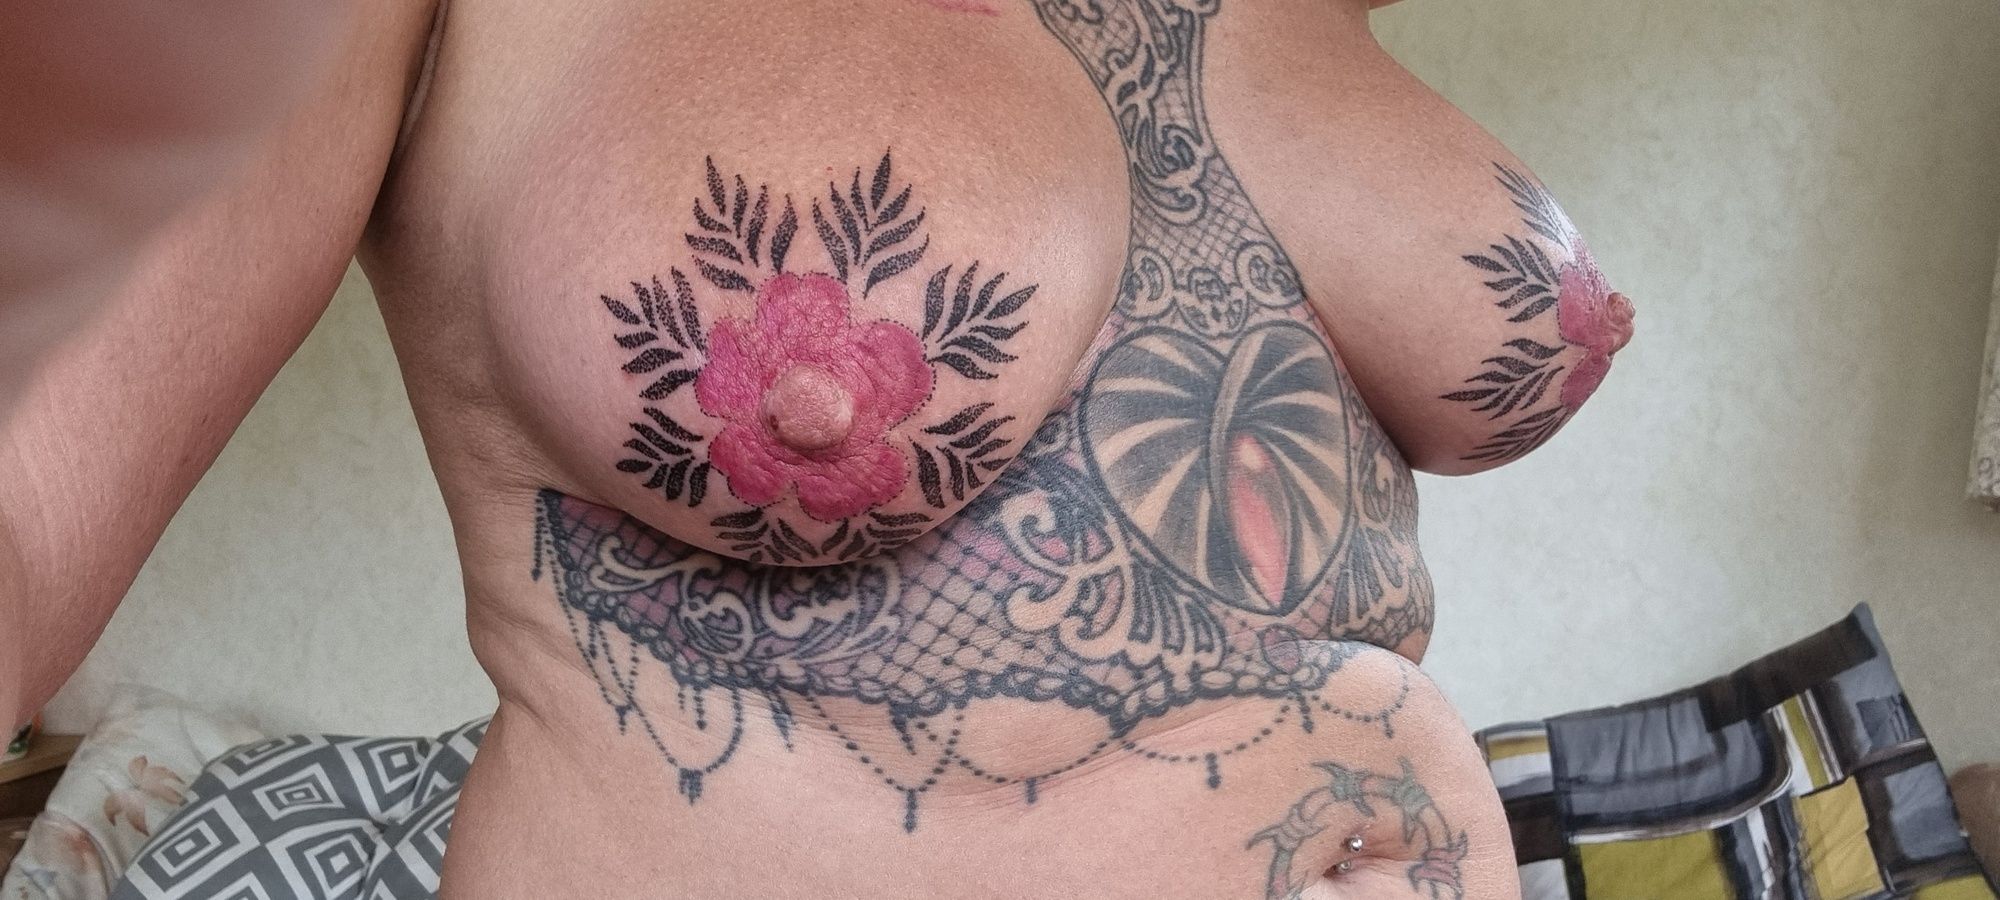 New titty tatts #2